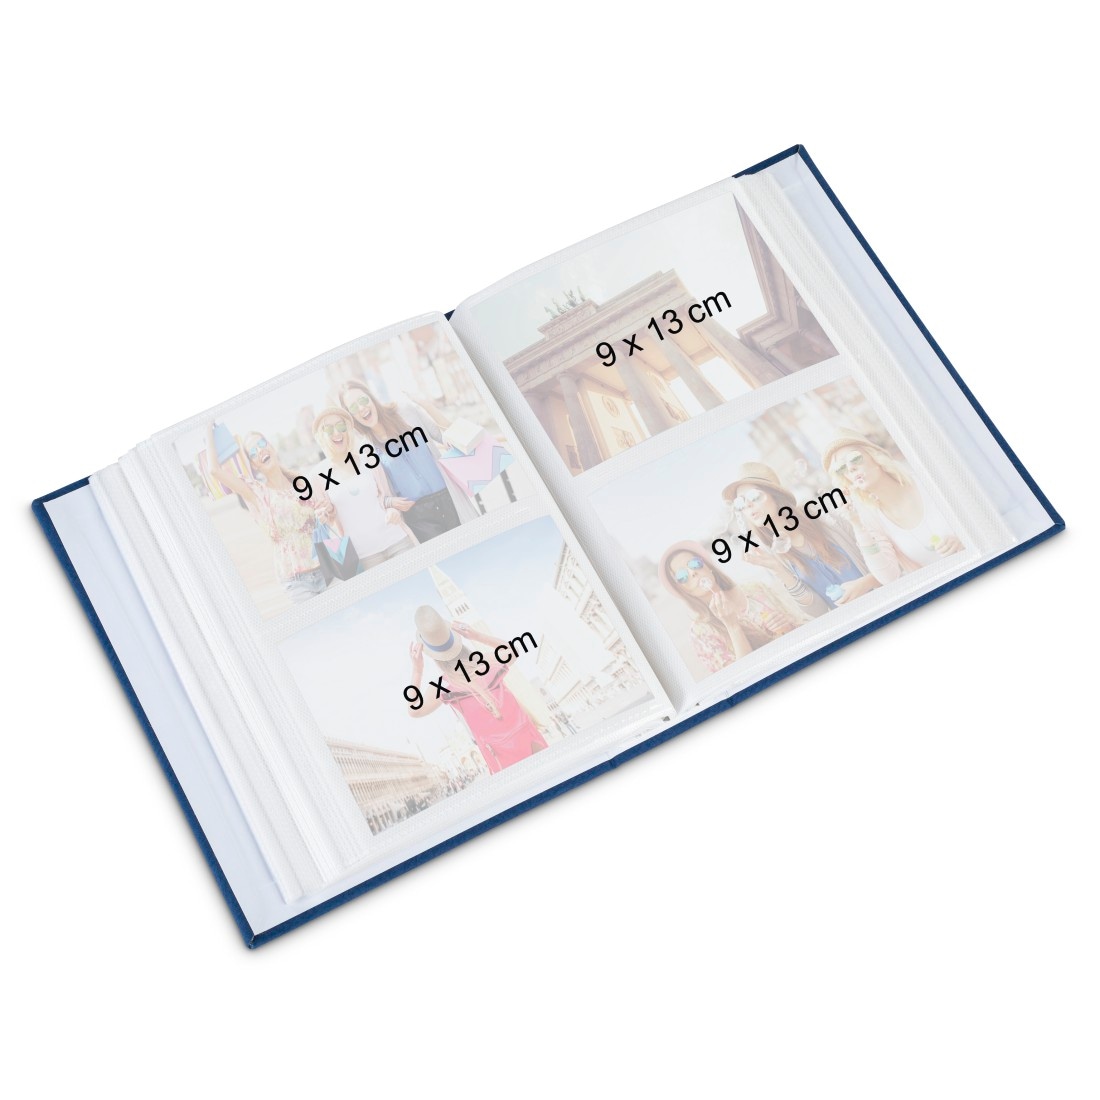 Fotos Rechnung »Einsteck-Album Fotoalbum 9x13 200 Format auf kaufen im Hama Foto Album« für cm \